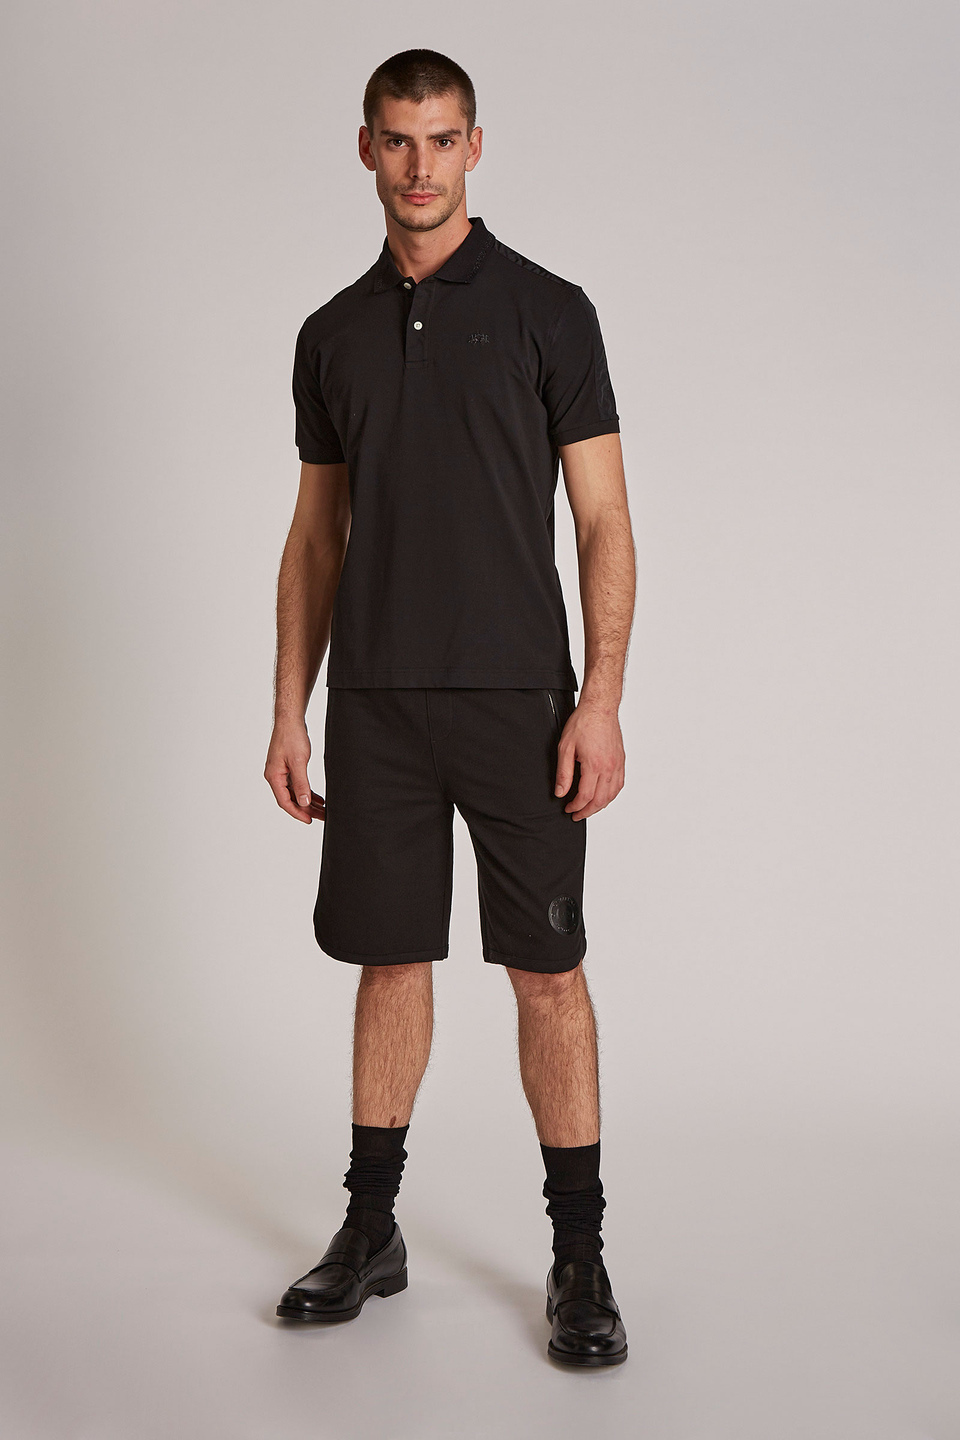 Herren-Poloshirt aus Stretch-Baumwolle mit kurzen Ärmeln im Regular Fit | La Martina - Official Online Shop